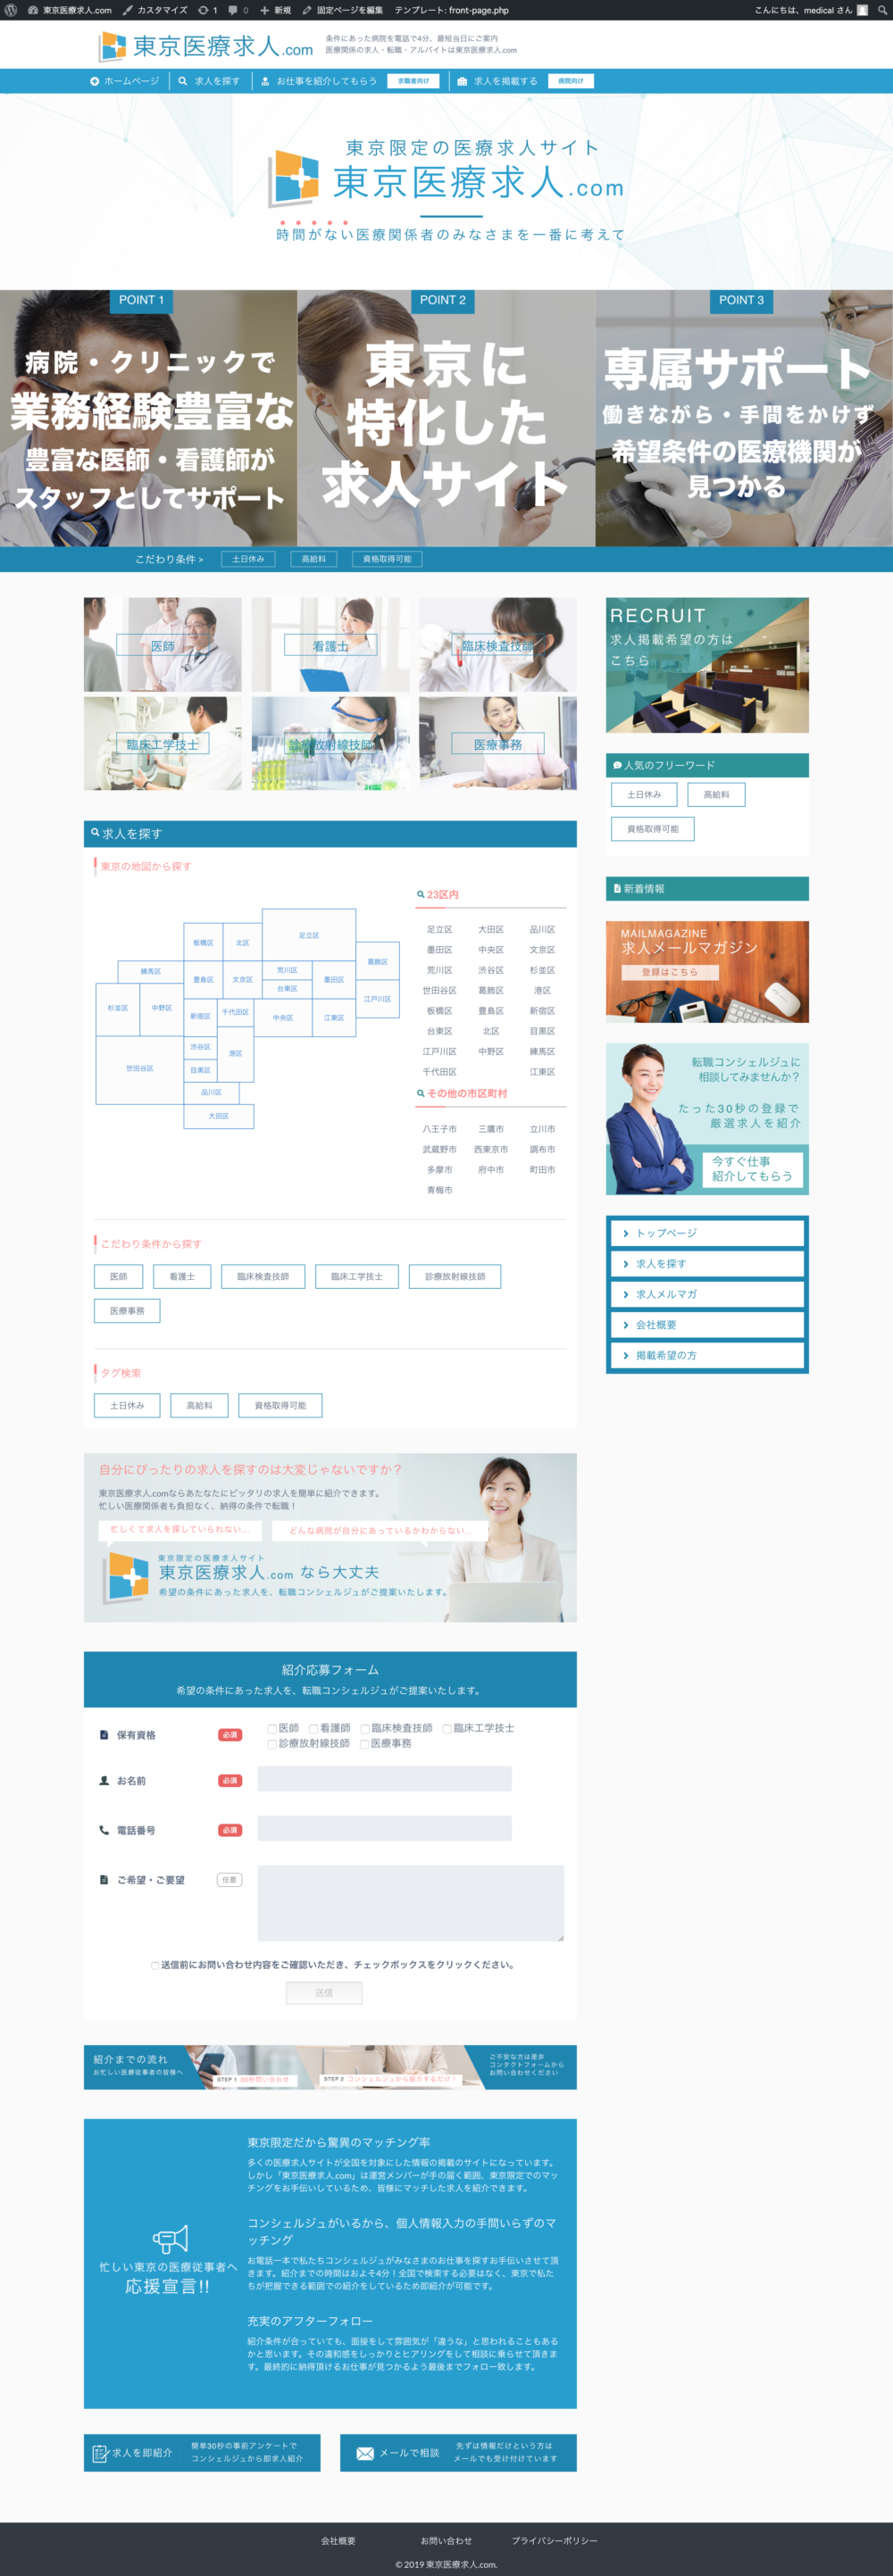 【ホームページ作成事例】医療系求人サイト